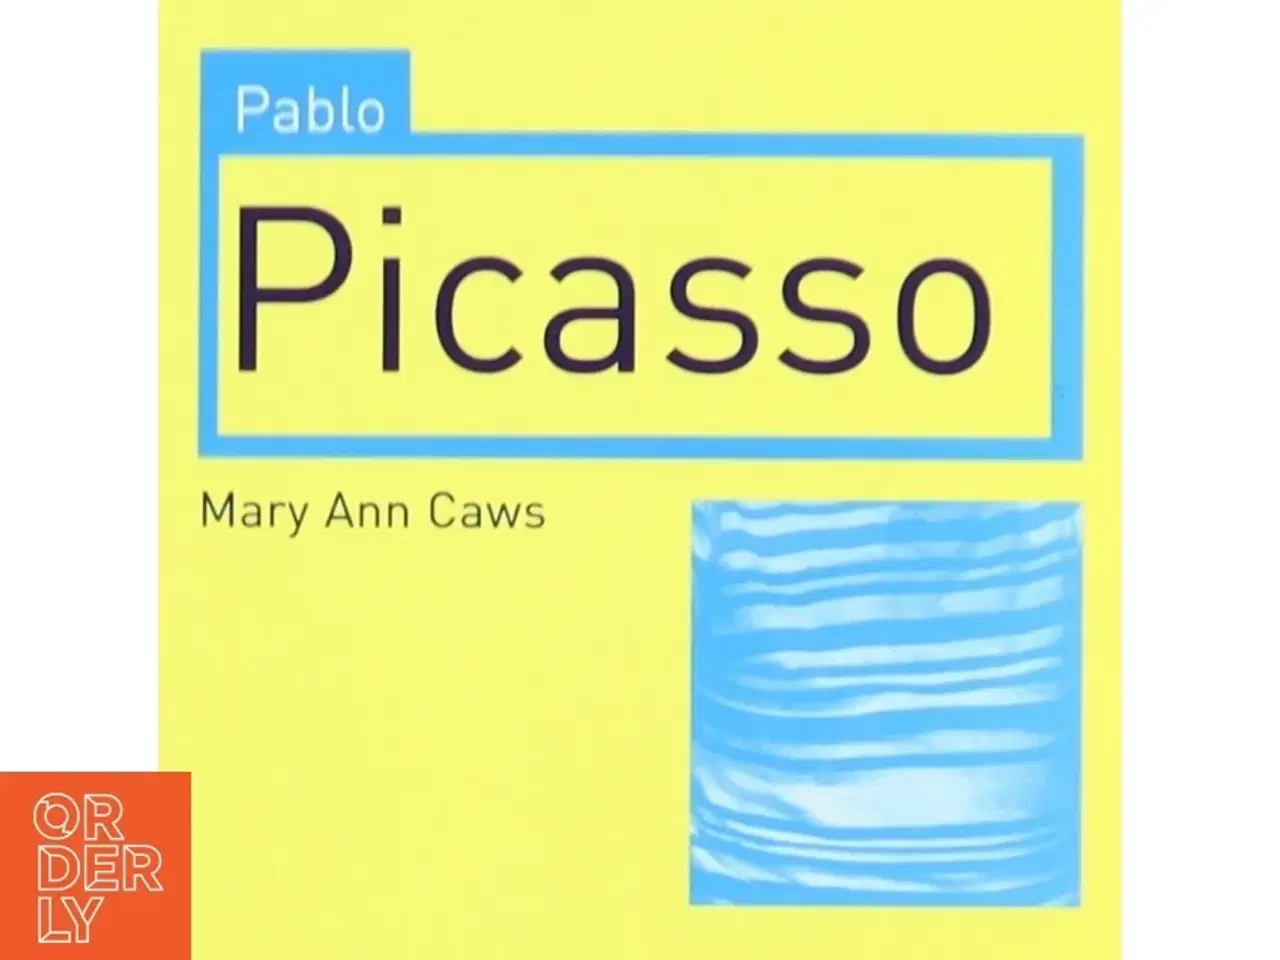 Billede 1 - 'Pablo Picasso' af Mary Ann Caws (bog)